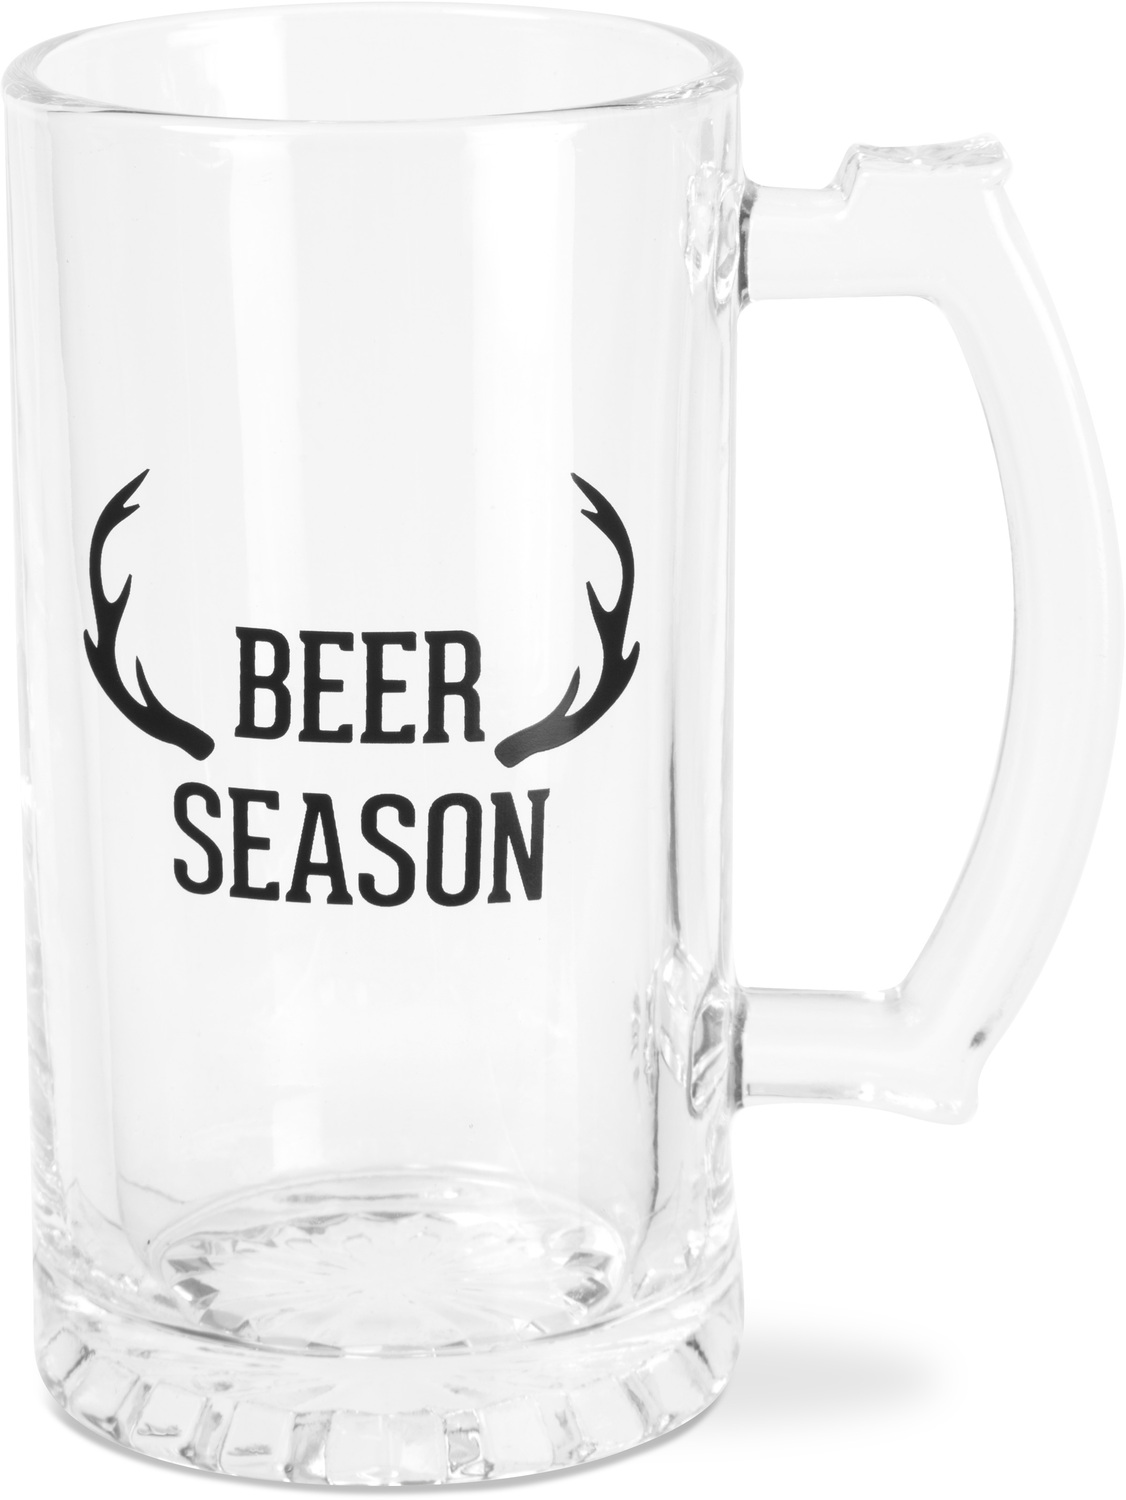 Beer Season by Man Crafted - Beer Season - 16 oz Beer Stein